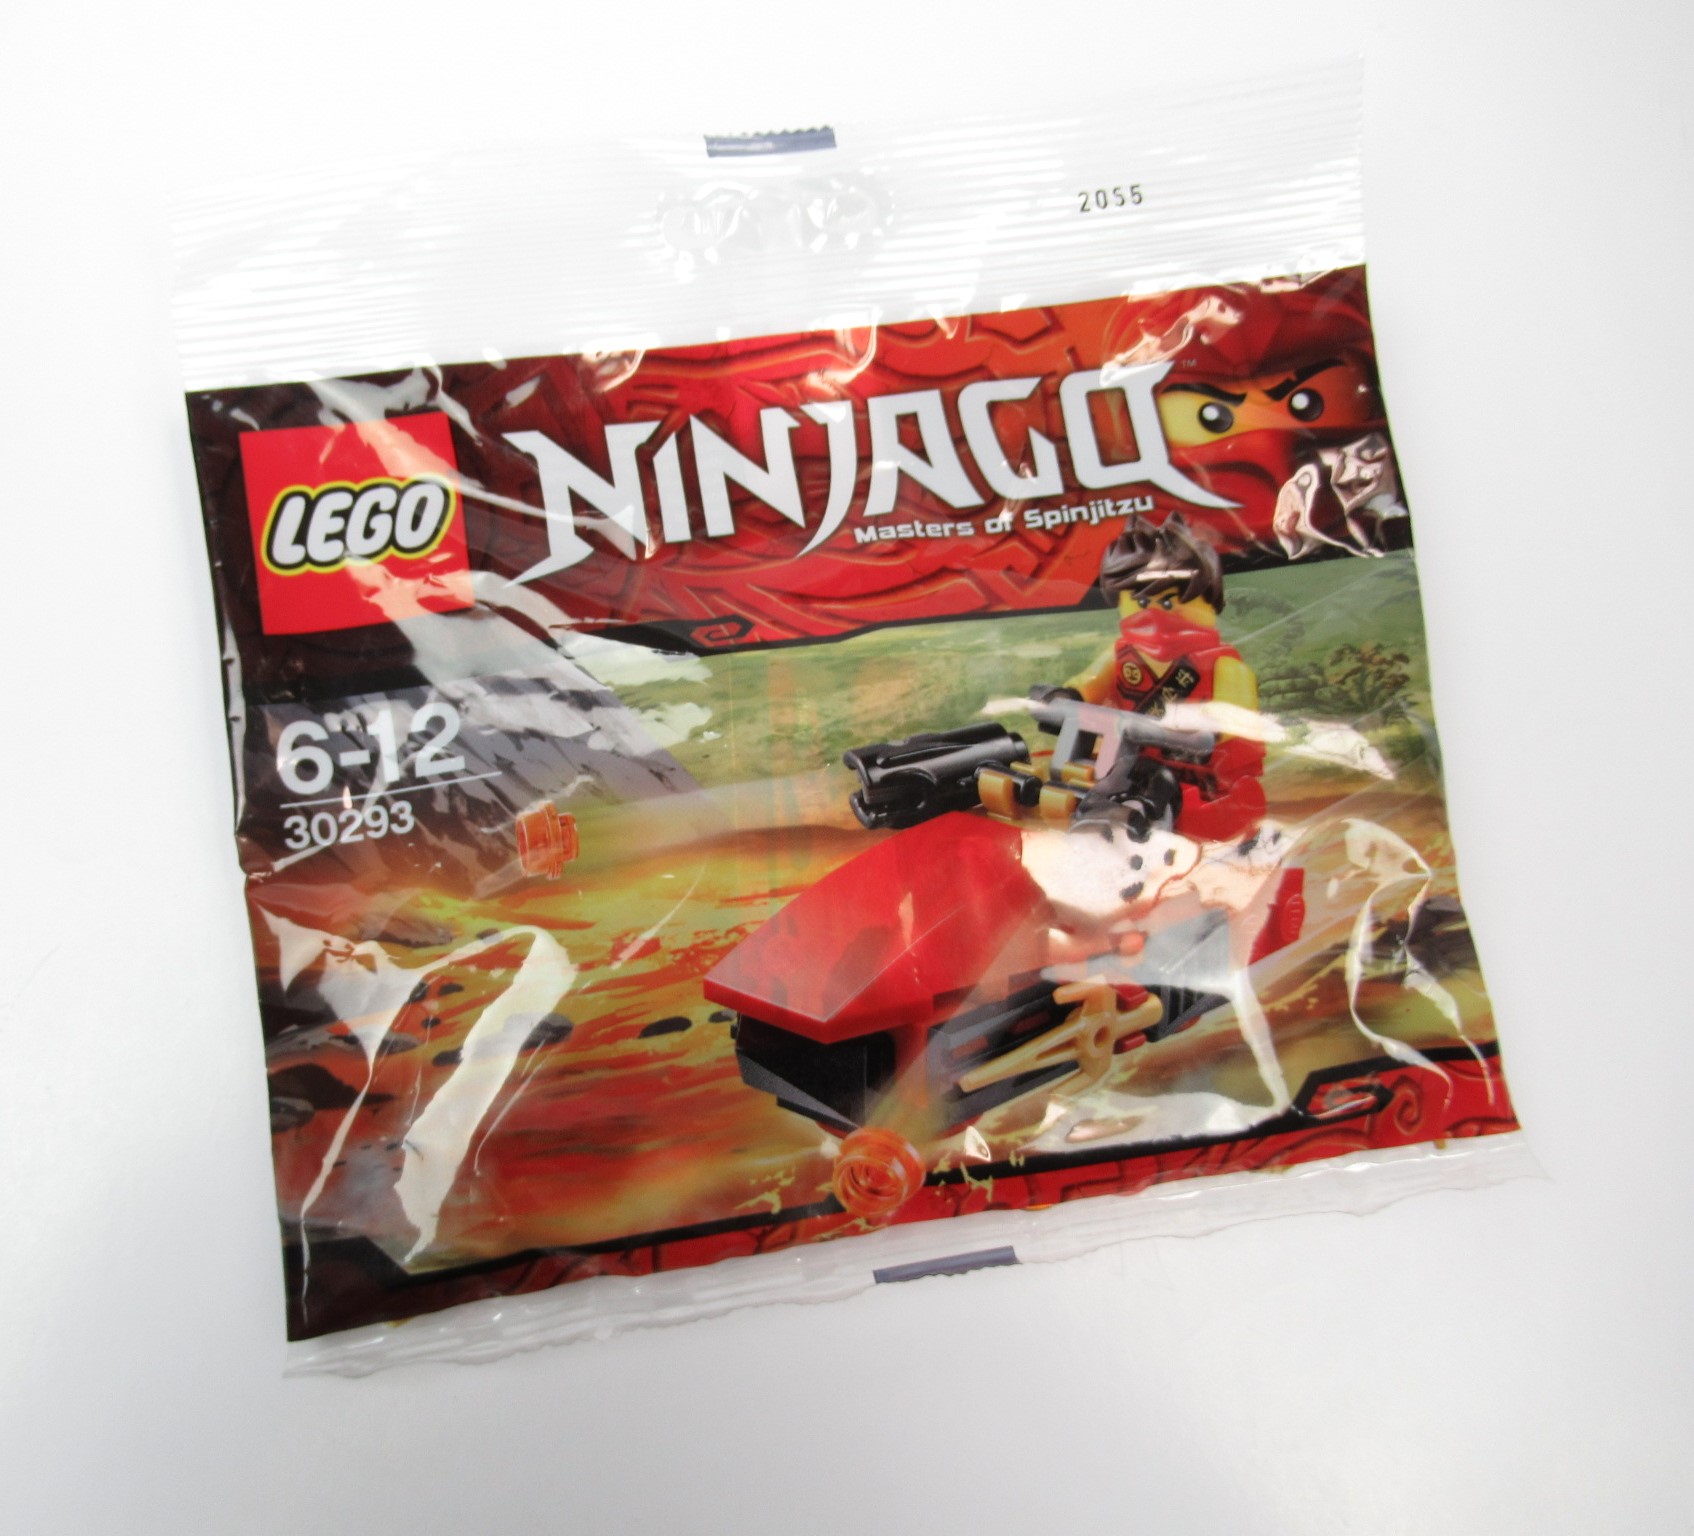 Kép a LEGO Ninjago 30293: Kai Drifter Polybag